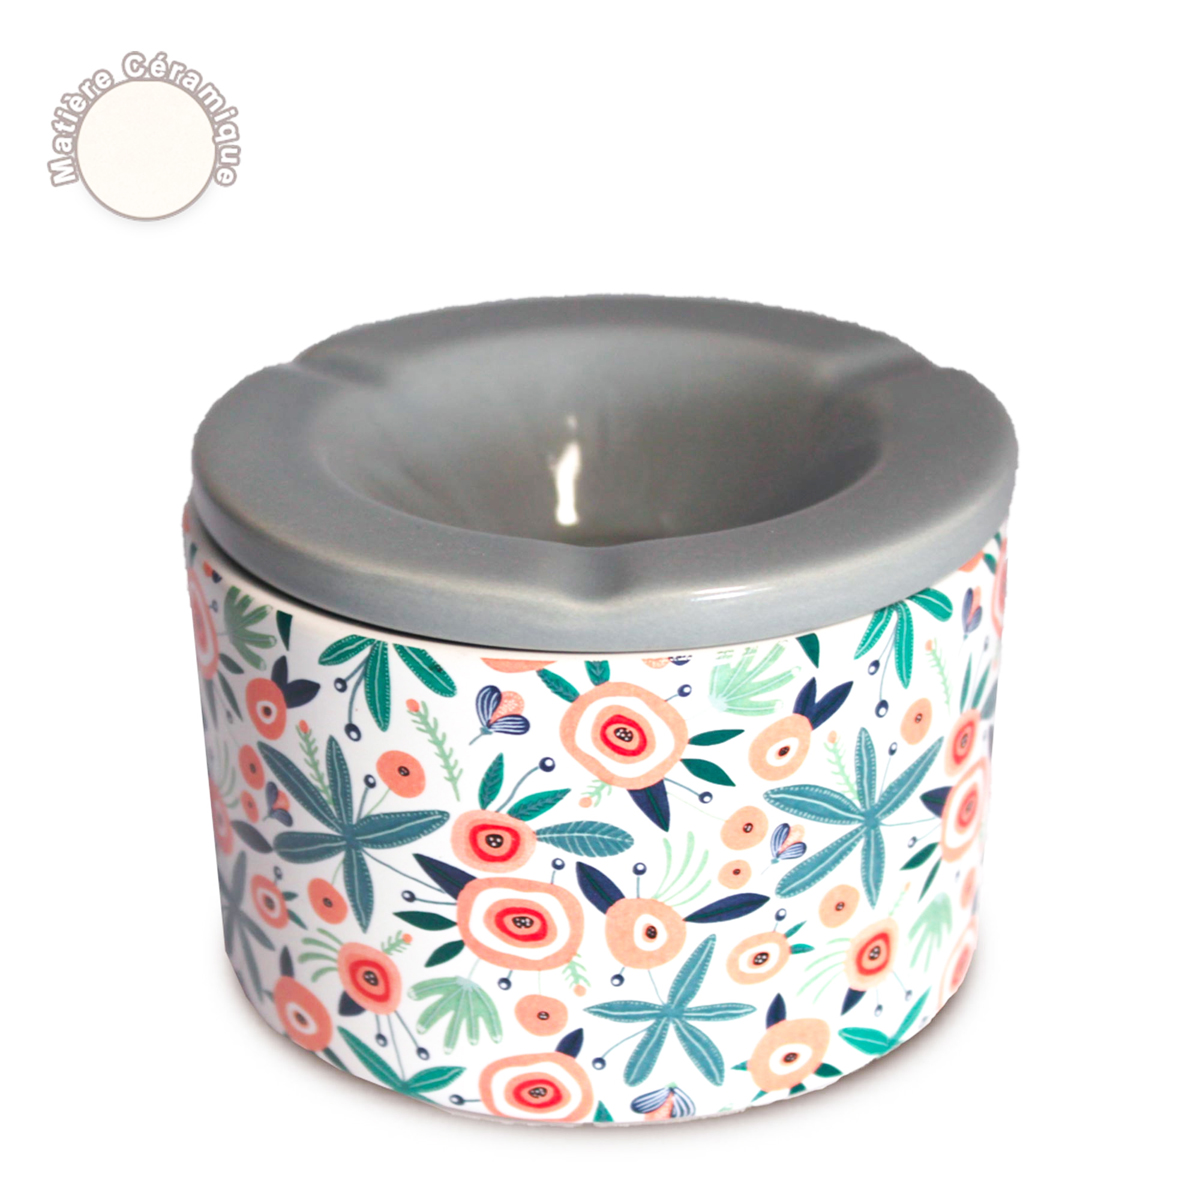 Cendrier marocain céramique \'Floral\' multicolore - 10x7 cm - [A0561]